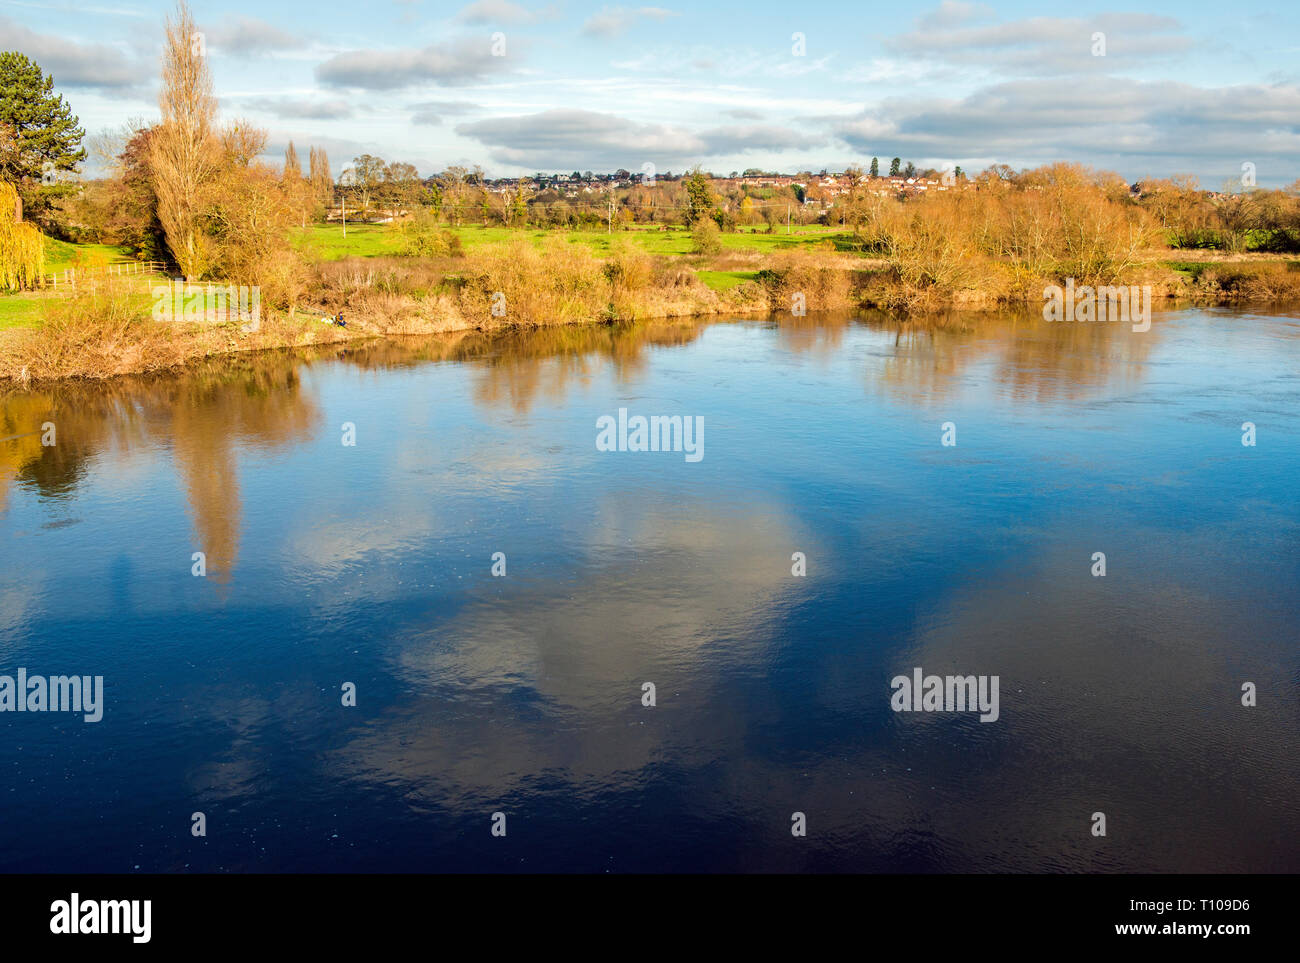 La rivière Wye à Ross on Wye sur Herefordshire Angleterre montrant des reflets de nuages dans l'eau sous le soleil d'automne/hiver jour en novembre. Banque D'Images